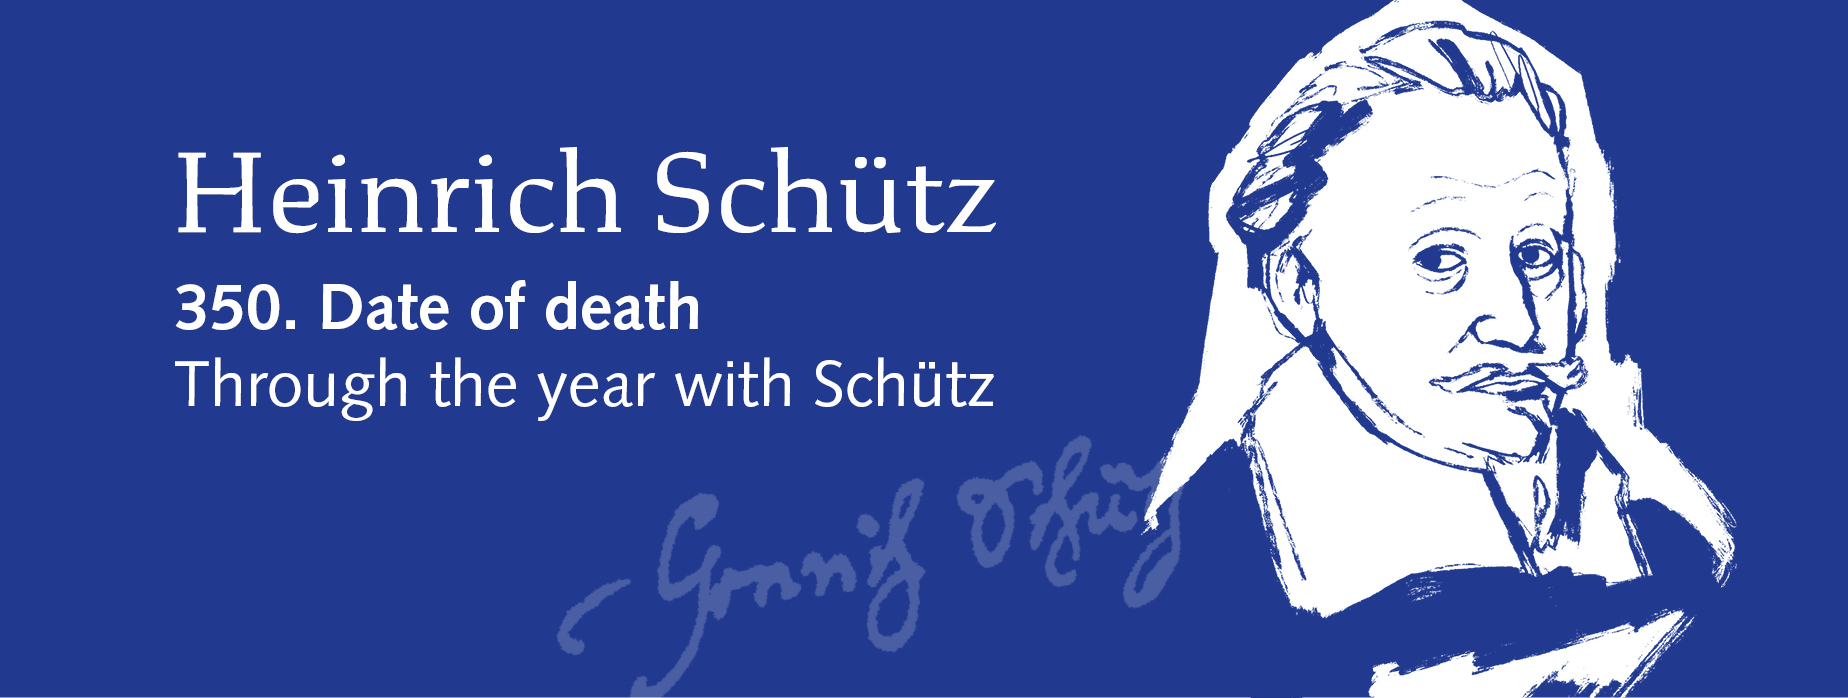 Heinrich Schuetz - 350. Date of death